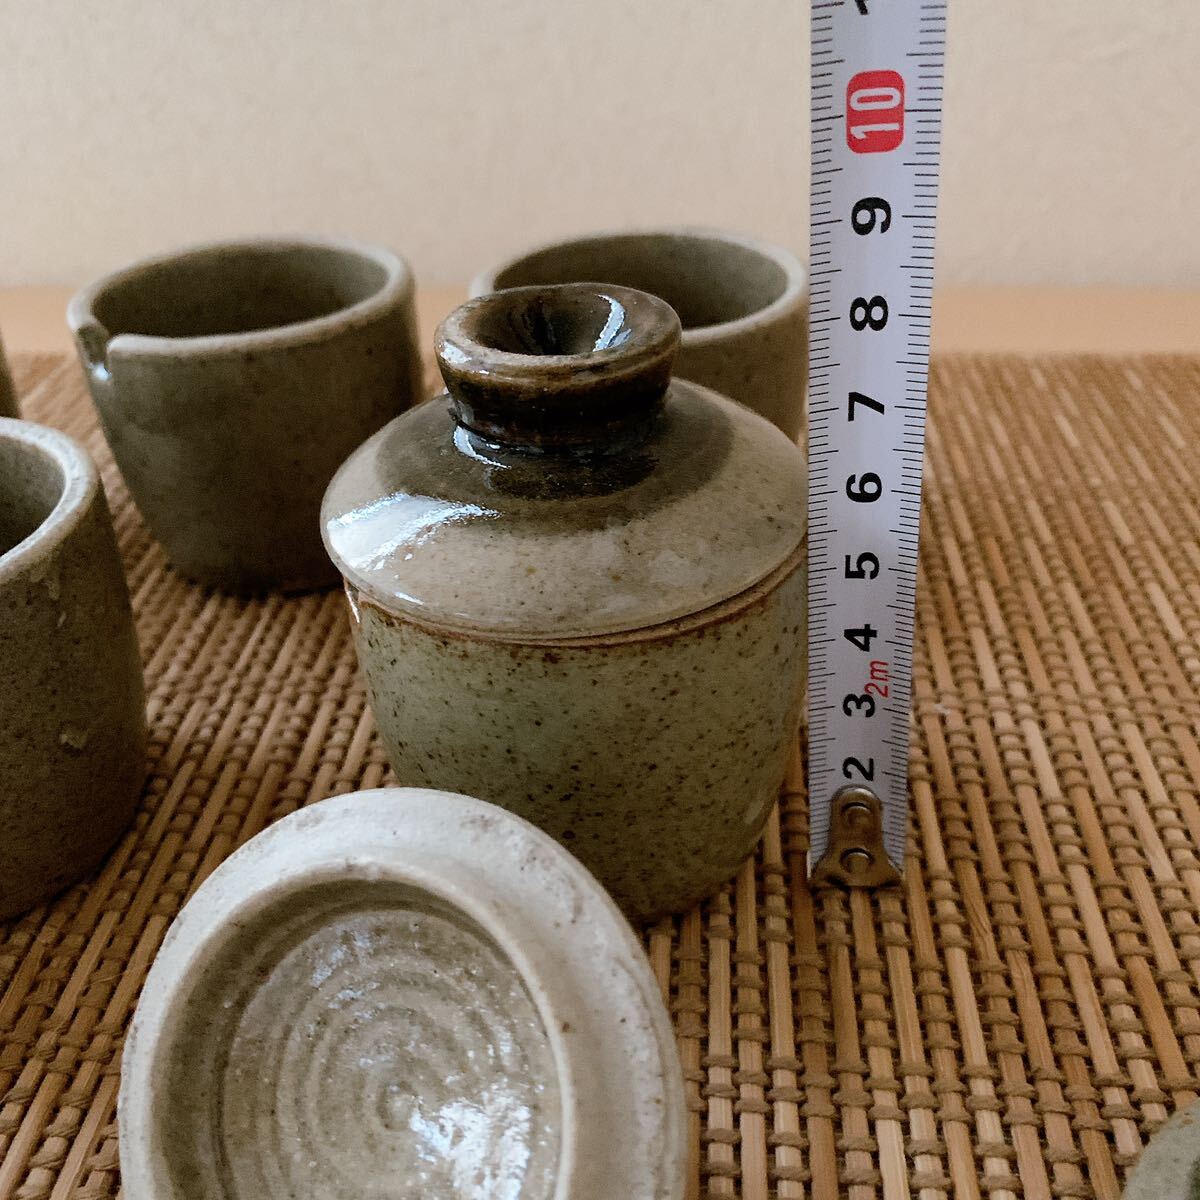 茶道具 茶碗 汁椀 伝統工芸 蓋付 6客セット 伝統工芸品_画像10